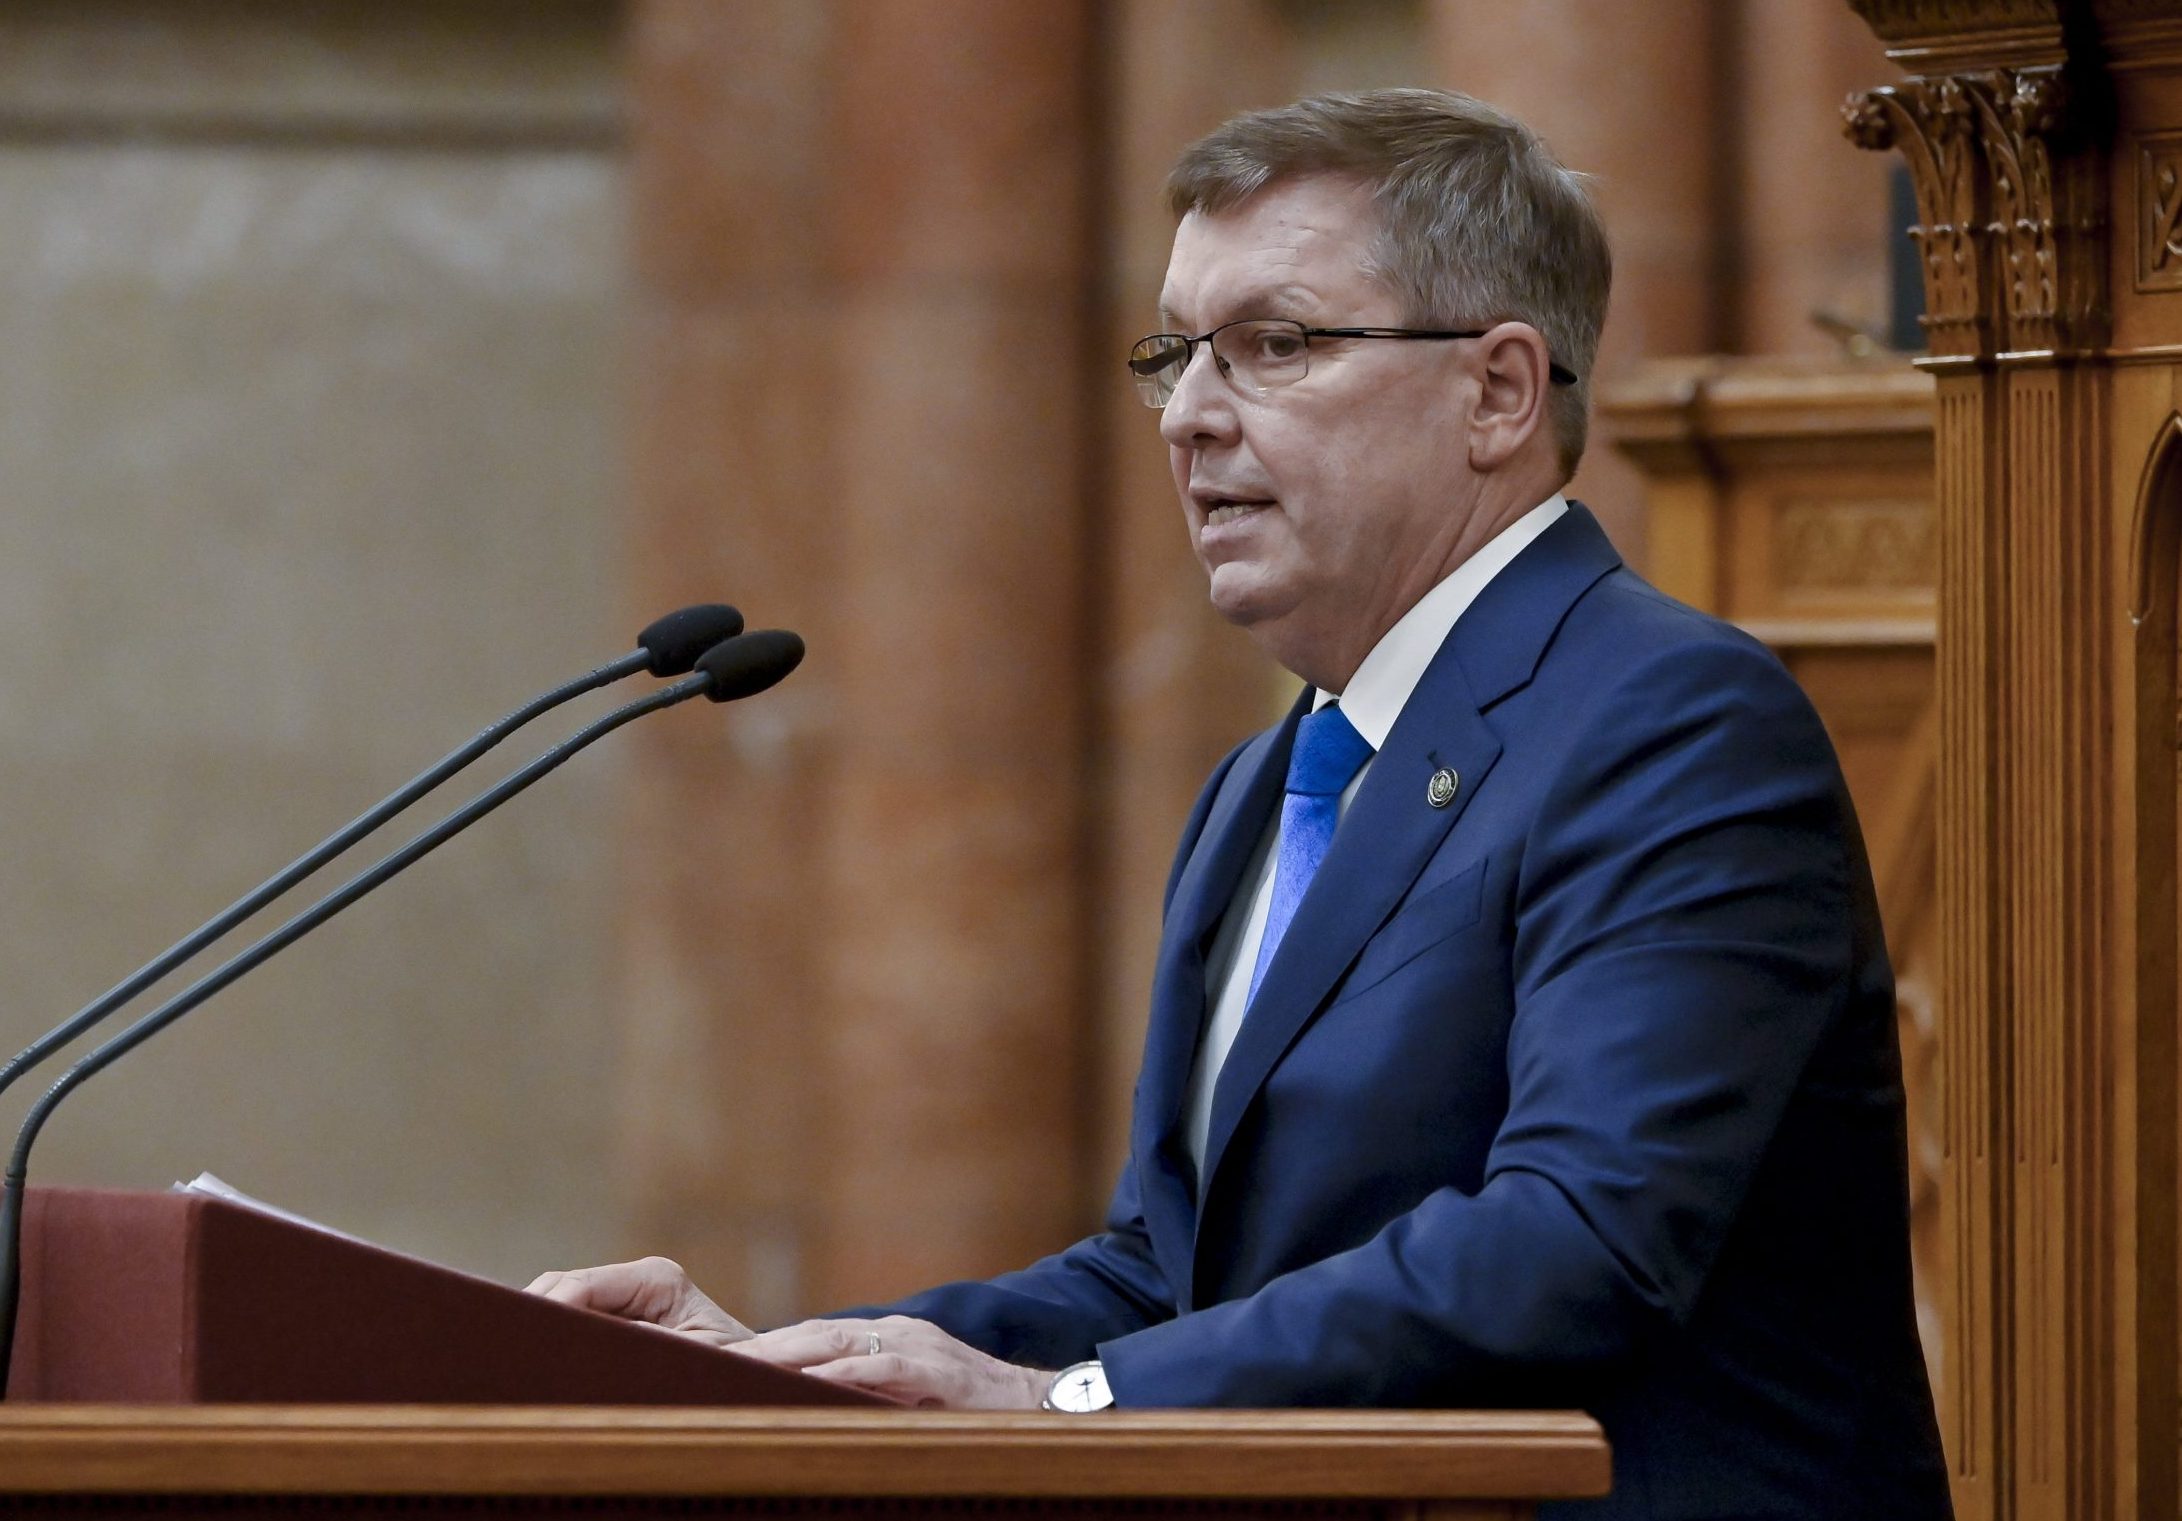 Zentralbankpräsident kritisiert den Umgang der Regierung mit der ungarischen Wirtschaft